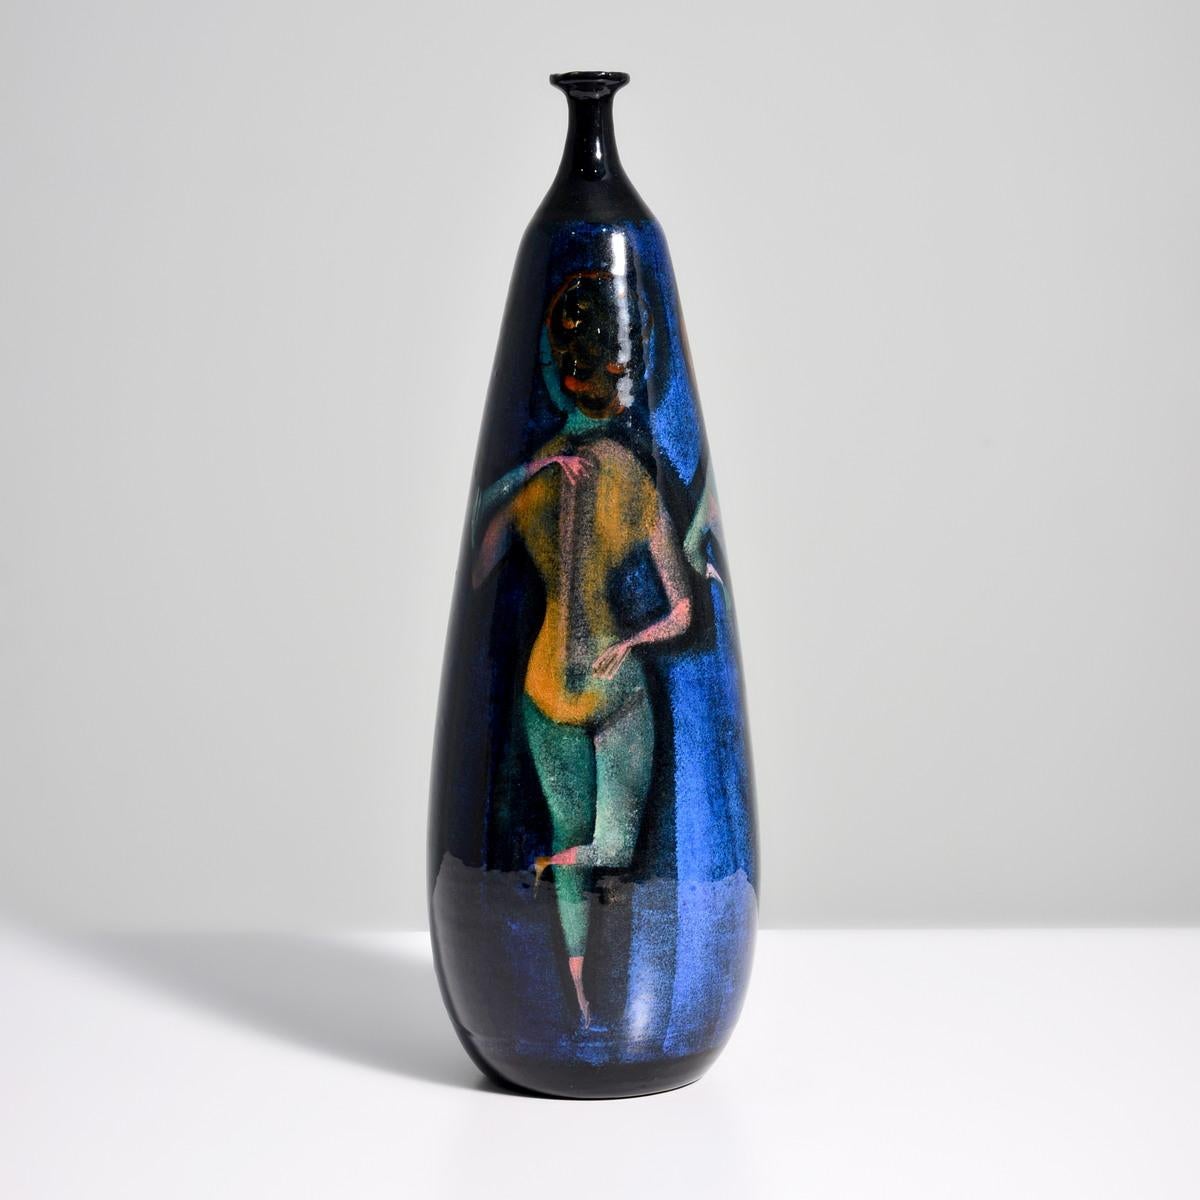 Künstler/Designer: Polia Sunockin Pillin (polnisch/amerikanisch, 1909-1992)

Zusätzliche Informationen: Polia Pillin war eine bemerkenswerte Keramikkünstlerin, die Handwerkskunst mit moderner Bildsprache verband.

Kennzeichnung(en); Anmerkungen: